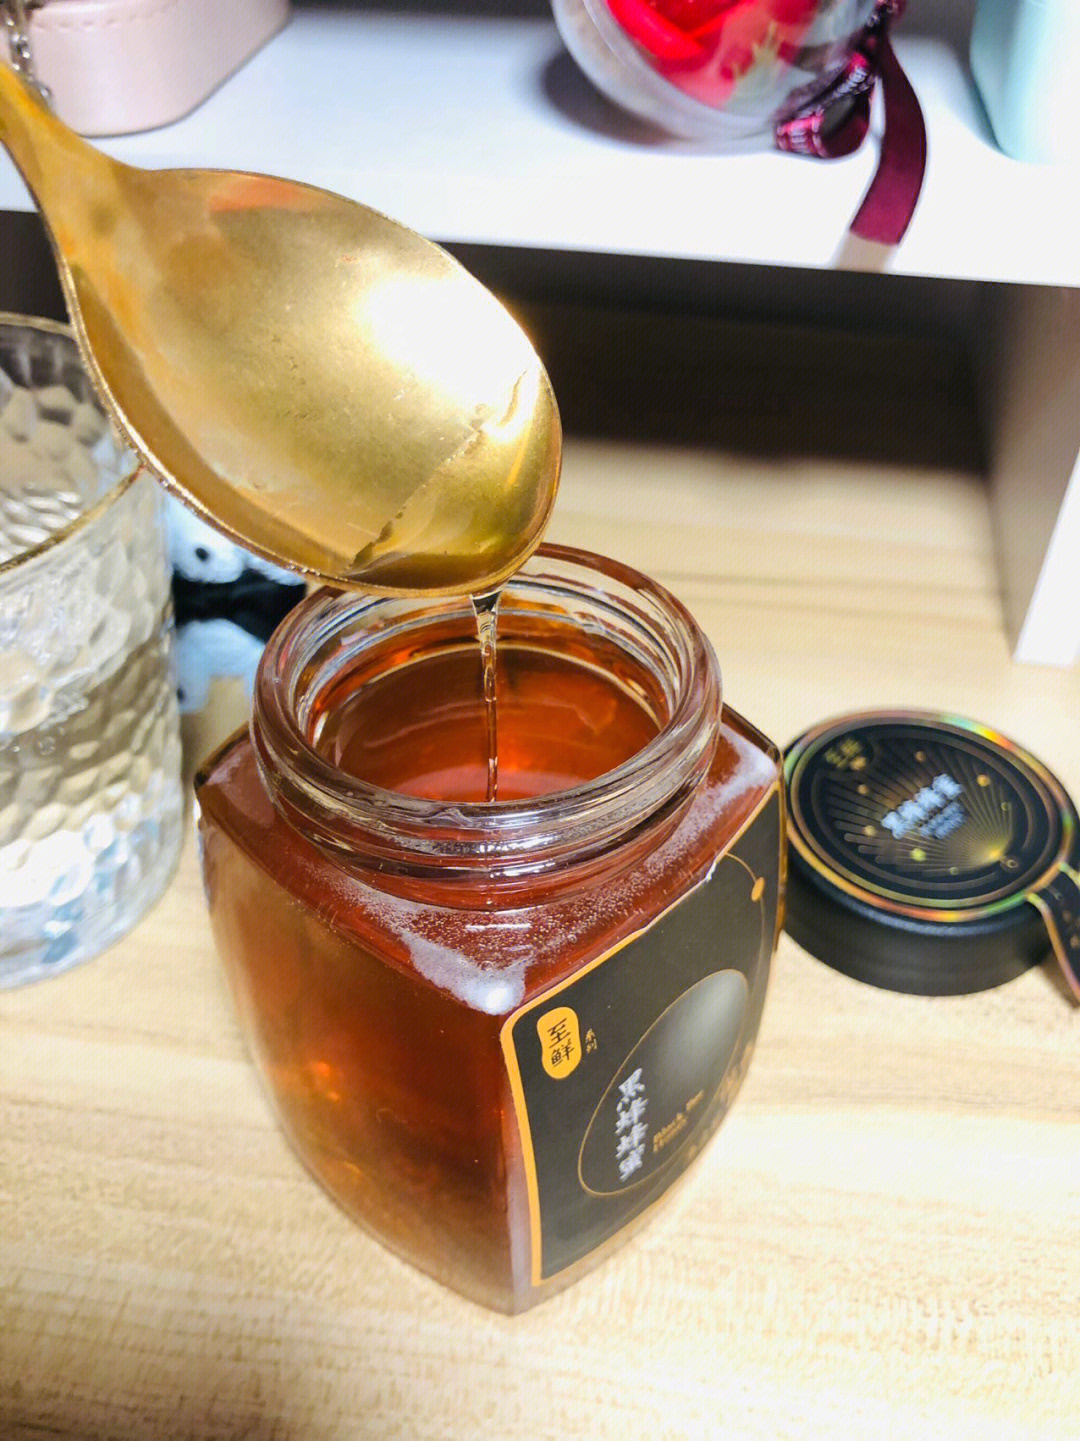 96很不错的蜂蜜推荐来自于新疆阿勒泰的黑锋蜂蜜蜂蜜呈浅琥珀色～它